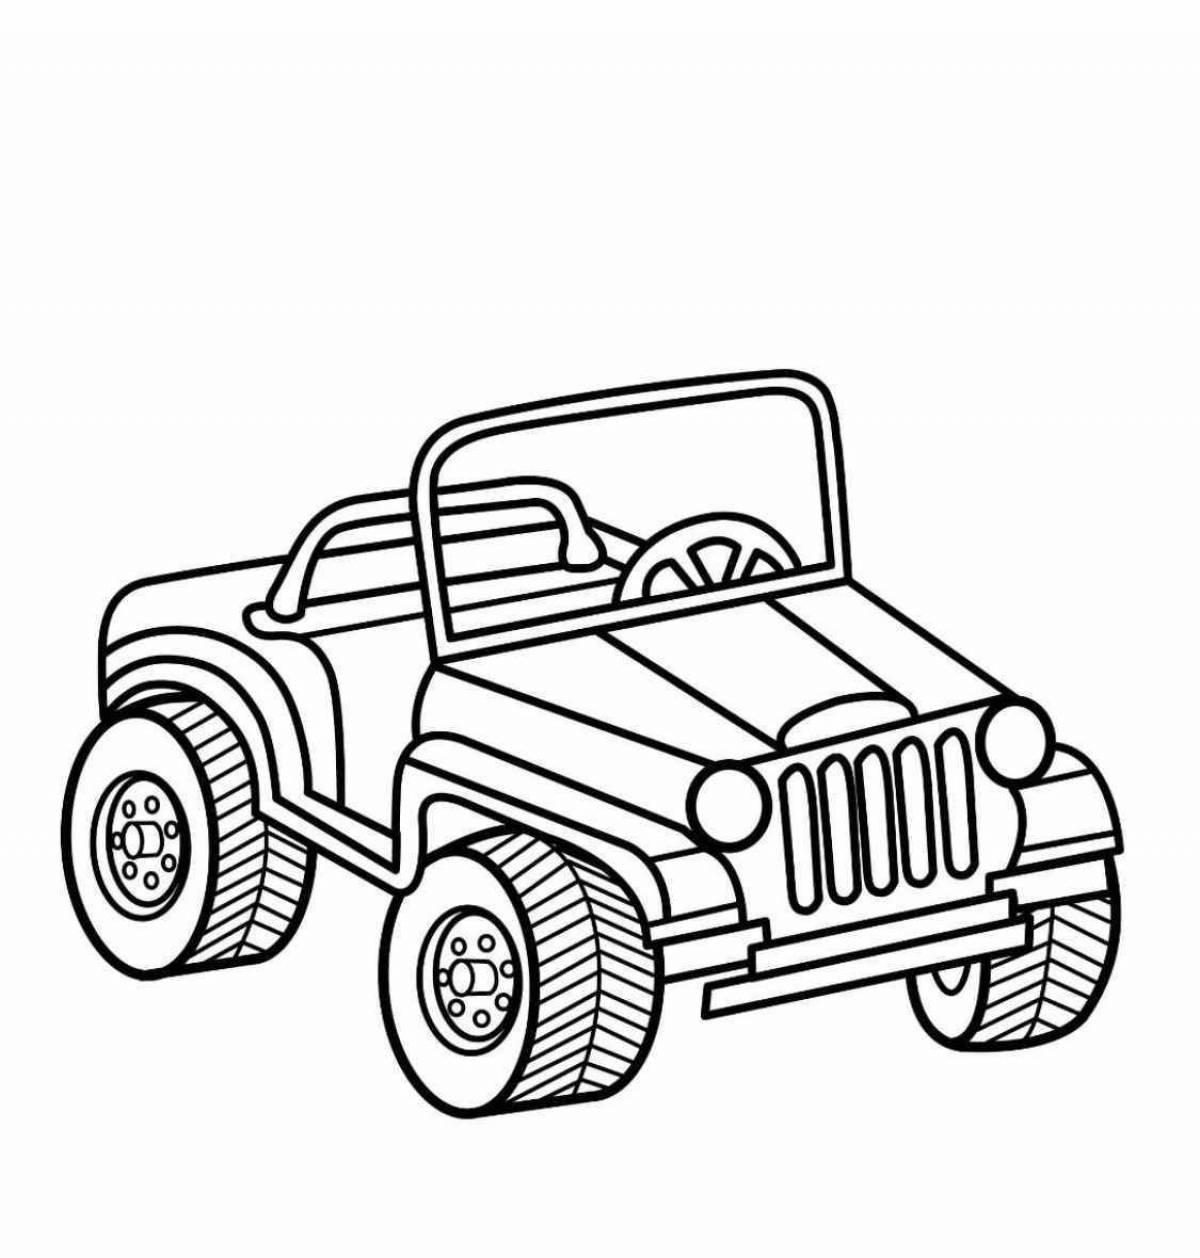 Colouring bright jeep for children